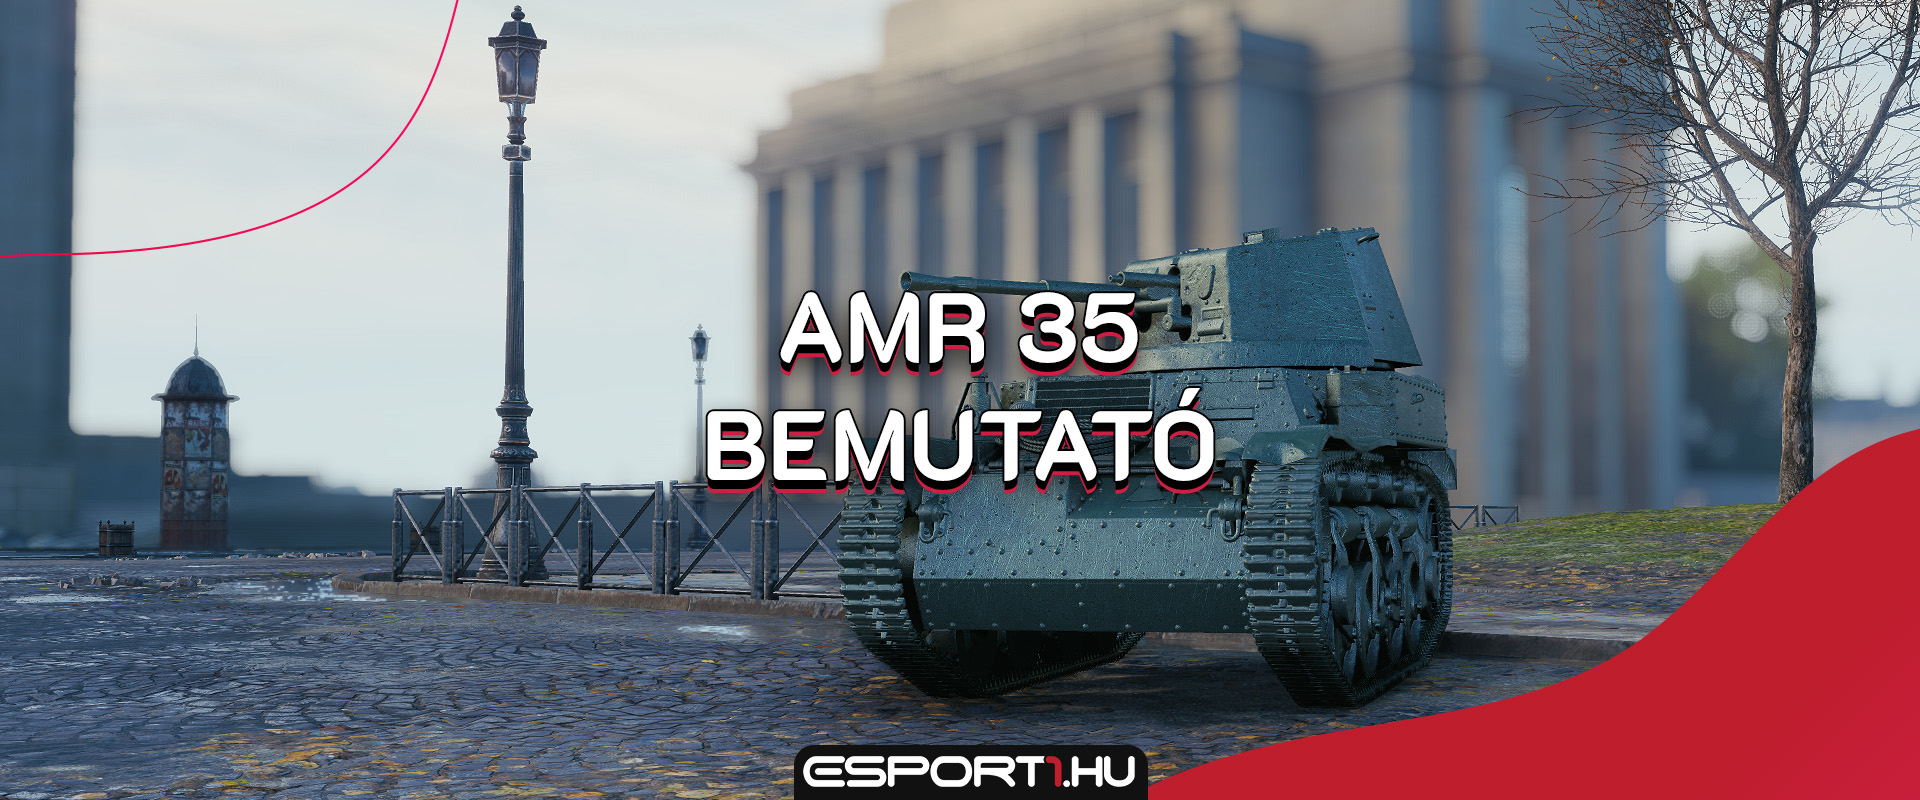 AMR 35 bemutató - Tier II-es pötyögtető érkezett a szupertesztre!